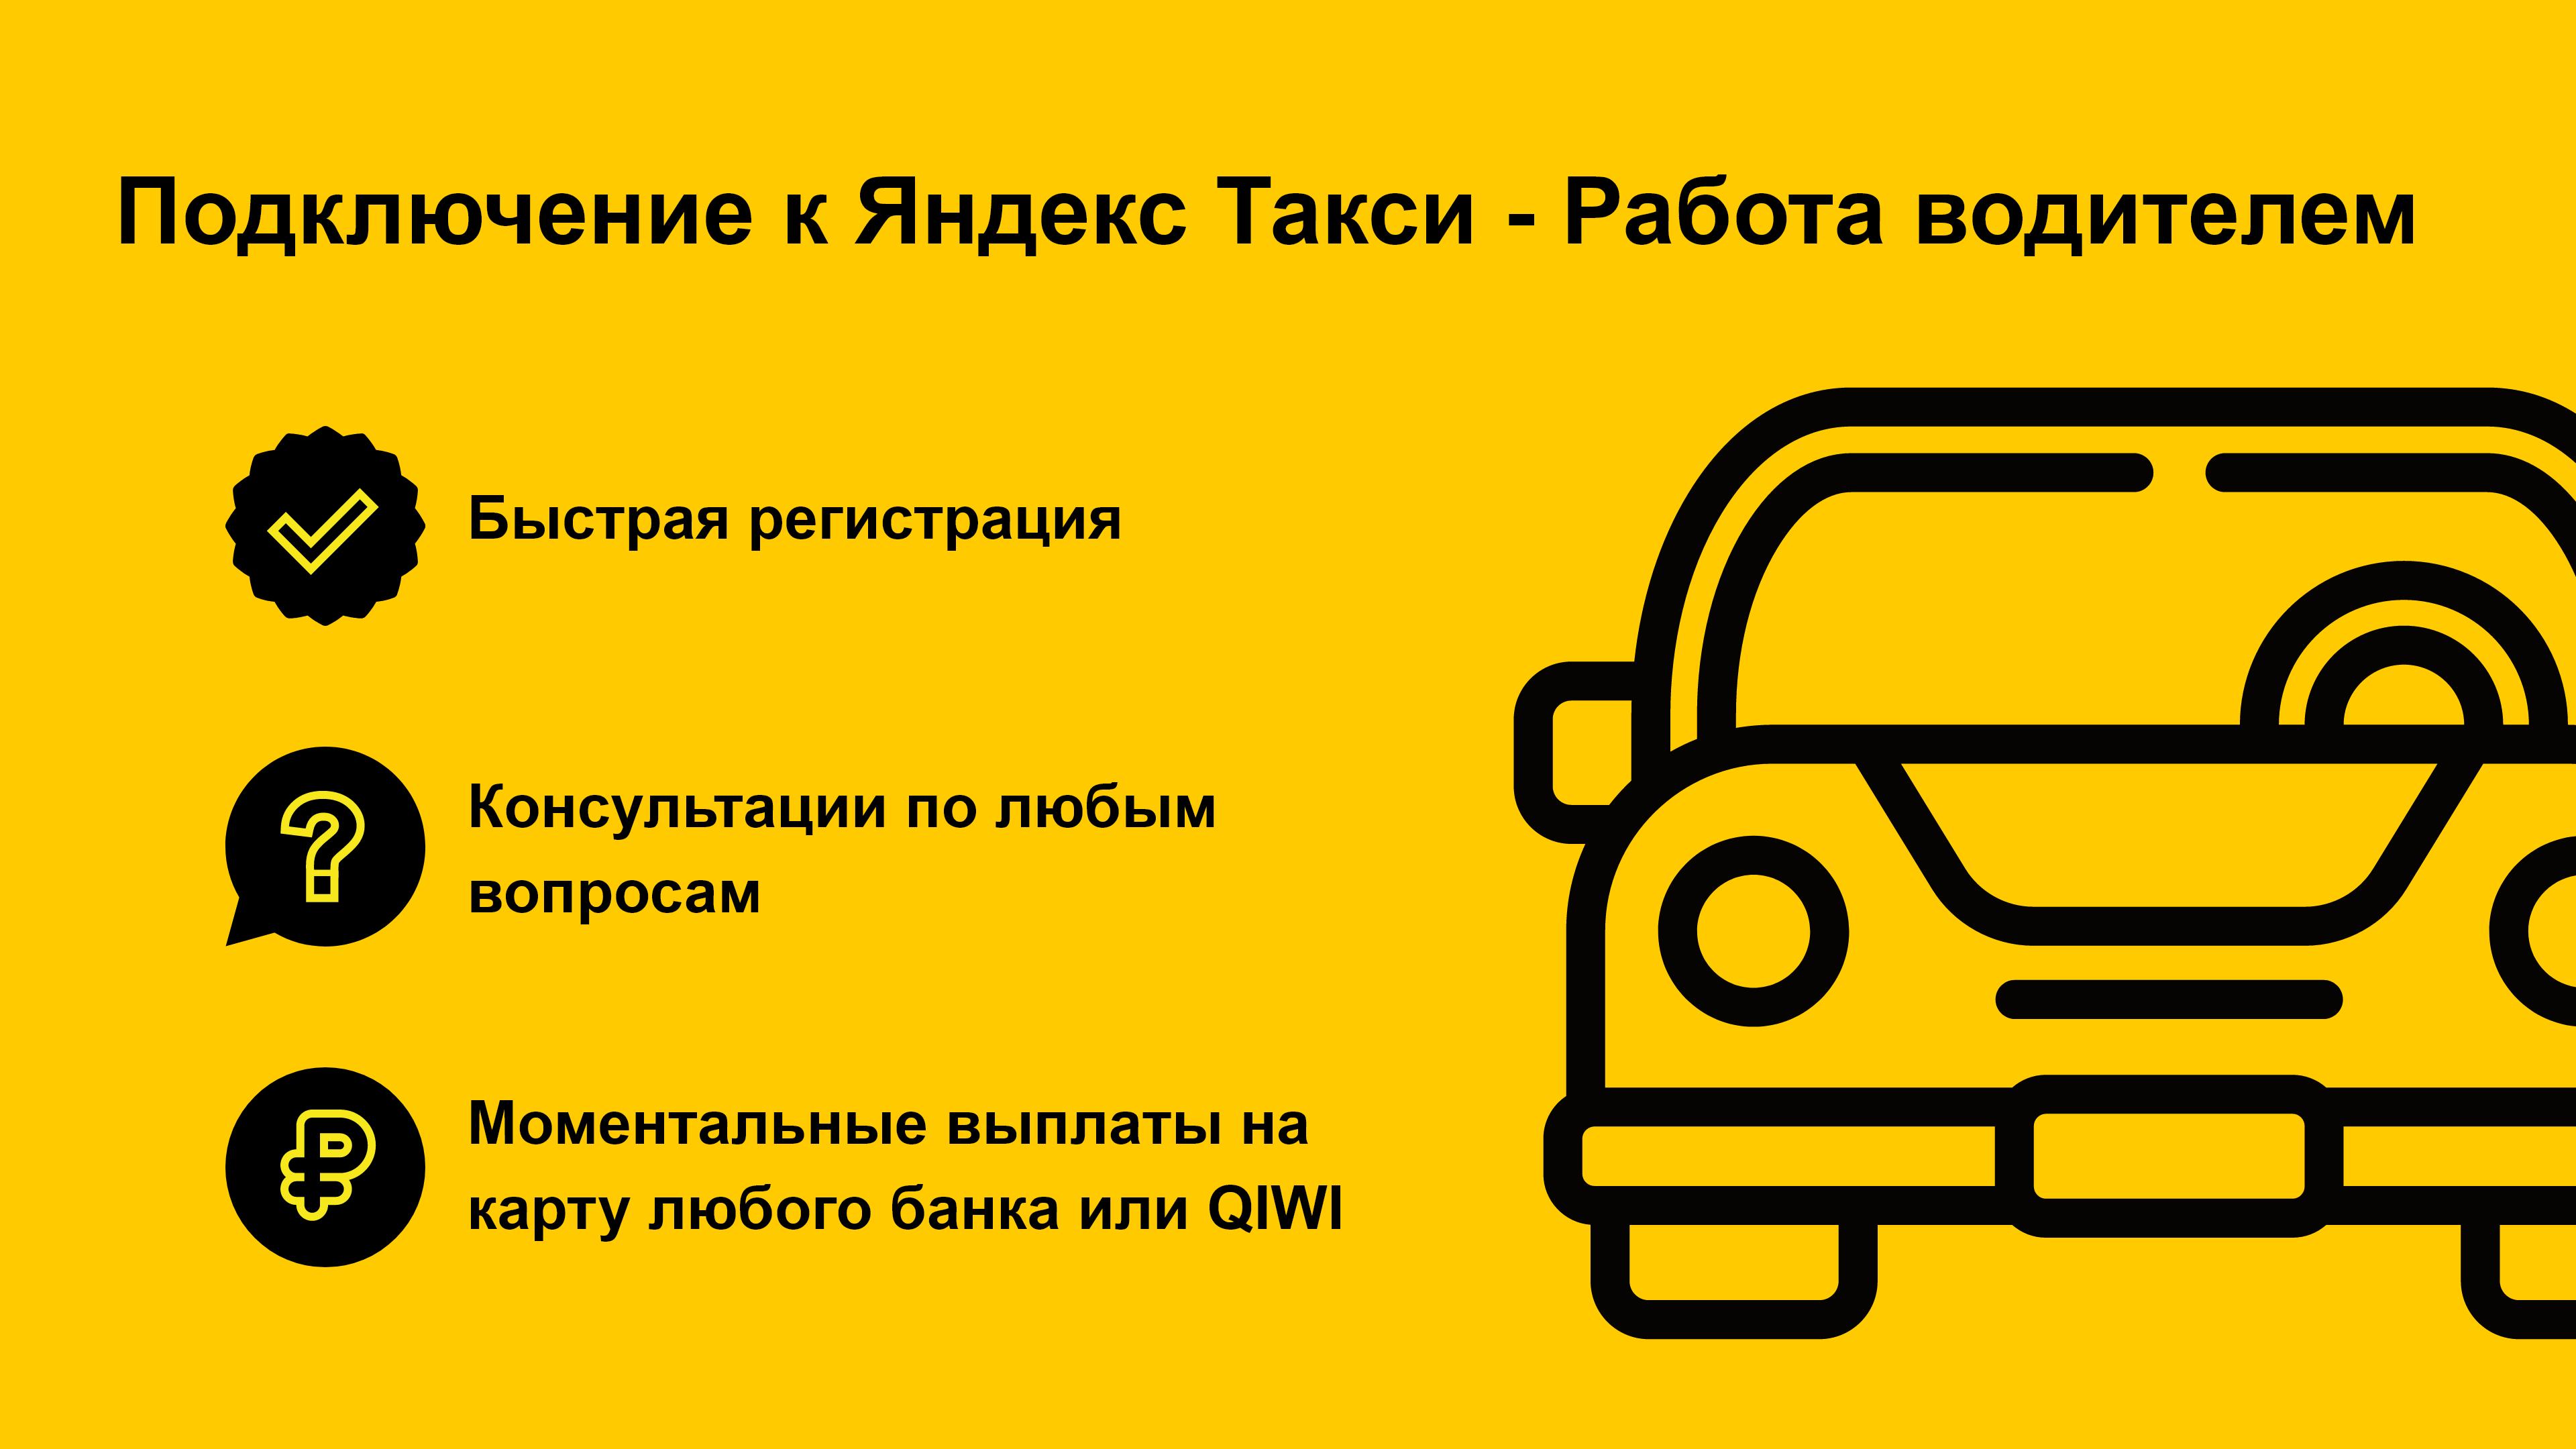 Приложение такси работа водителем. Подключение водителей к такси.